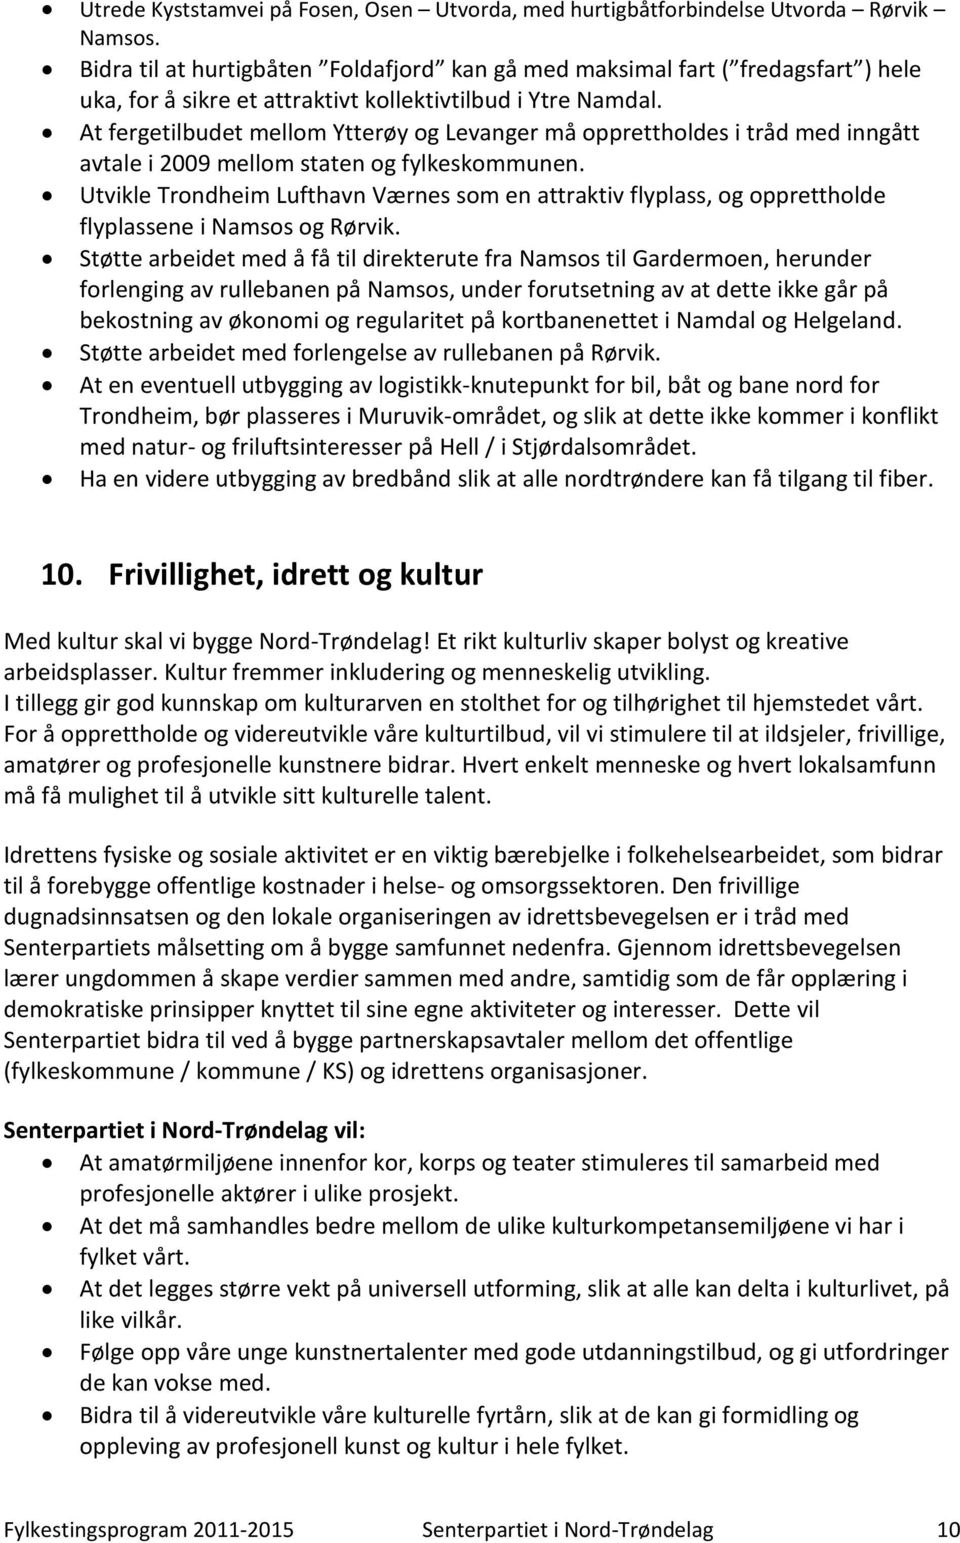 At fergetilbudet mellom Ytterøy og Levanger må opprettholdes i tråd med inngått avtale i 2009 mellom staten og fylkeskommunen.